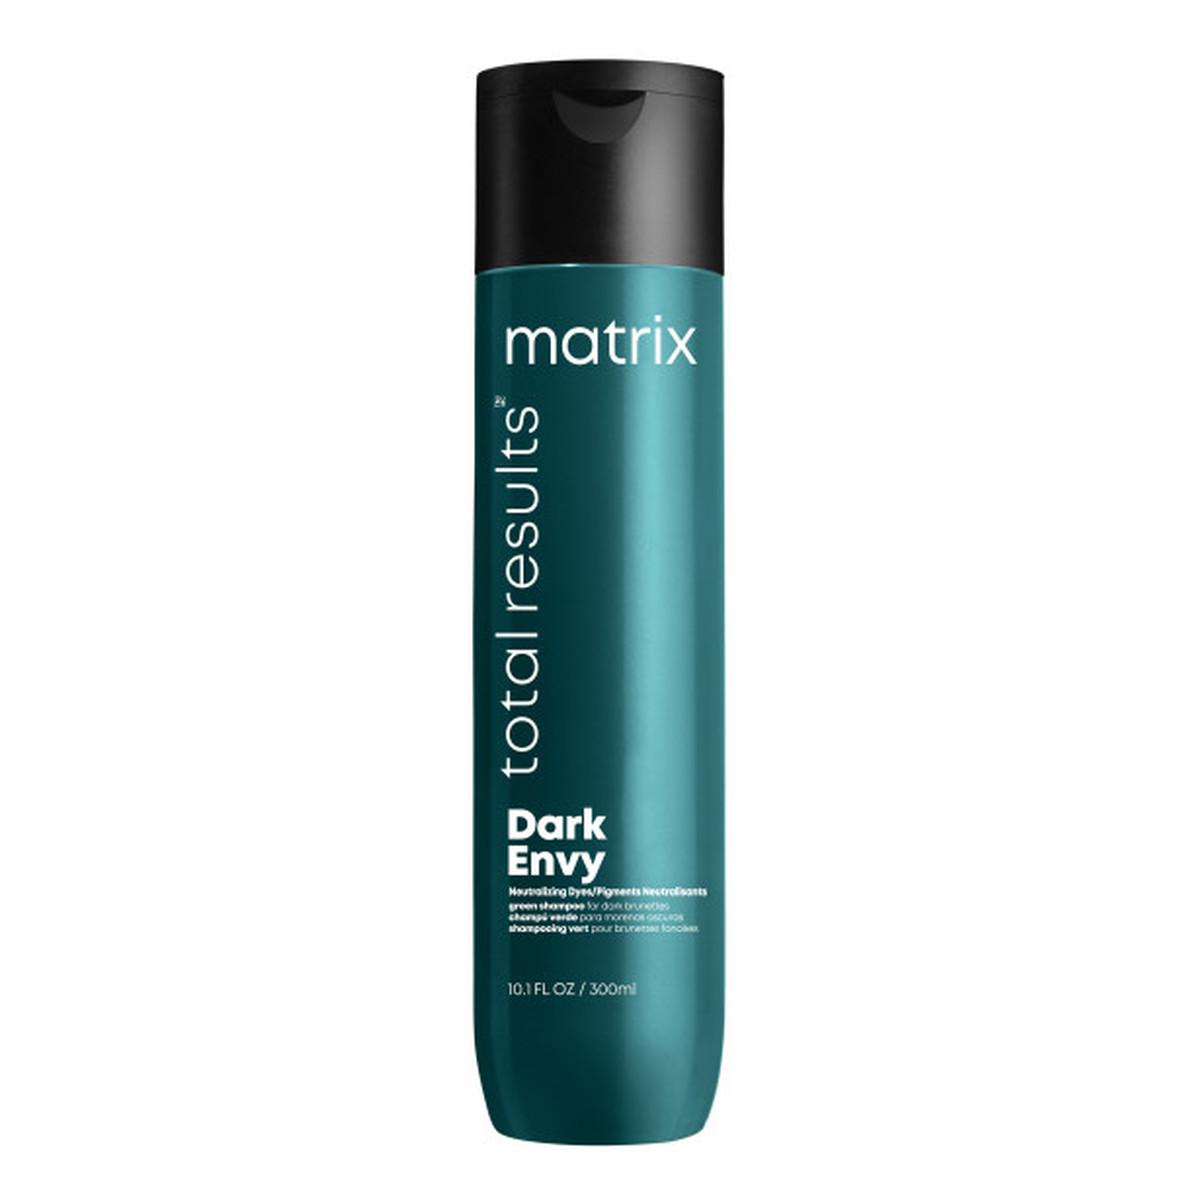 Matrix Total results dark envy szampon do włosów ciemnych neutralizujący miedziane odcienie 300ml